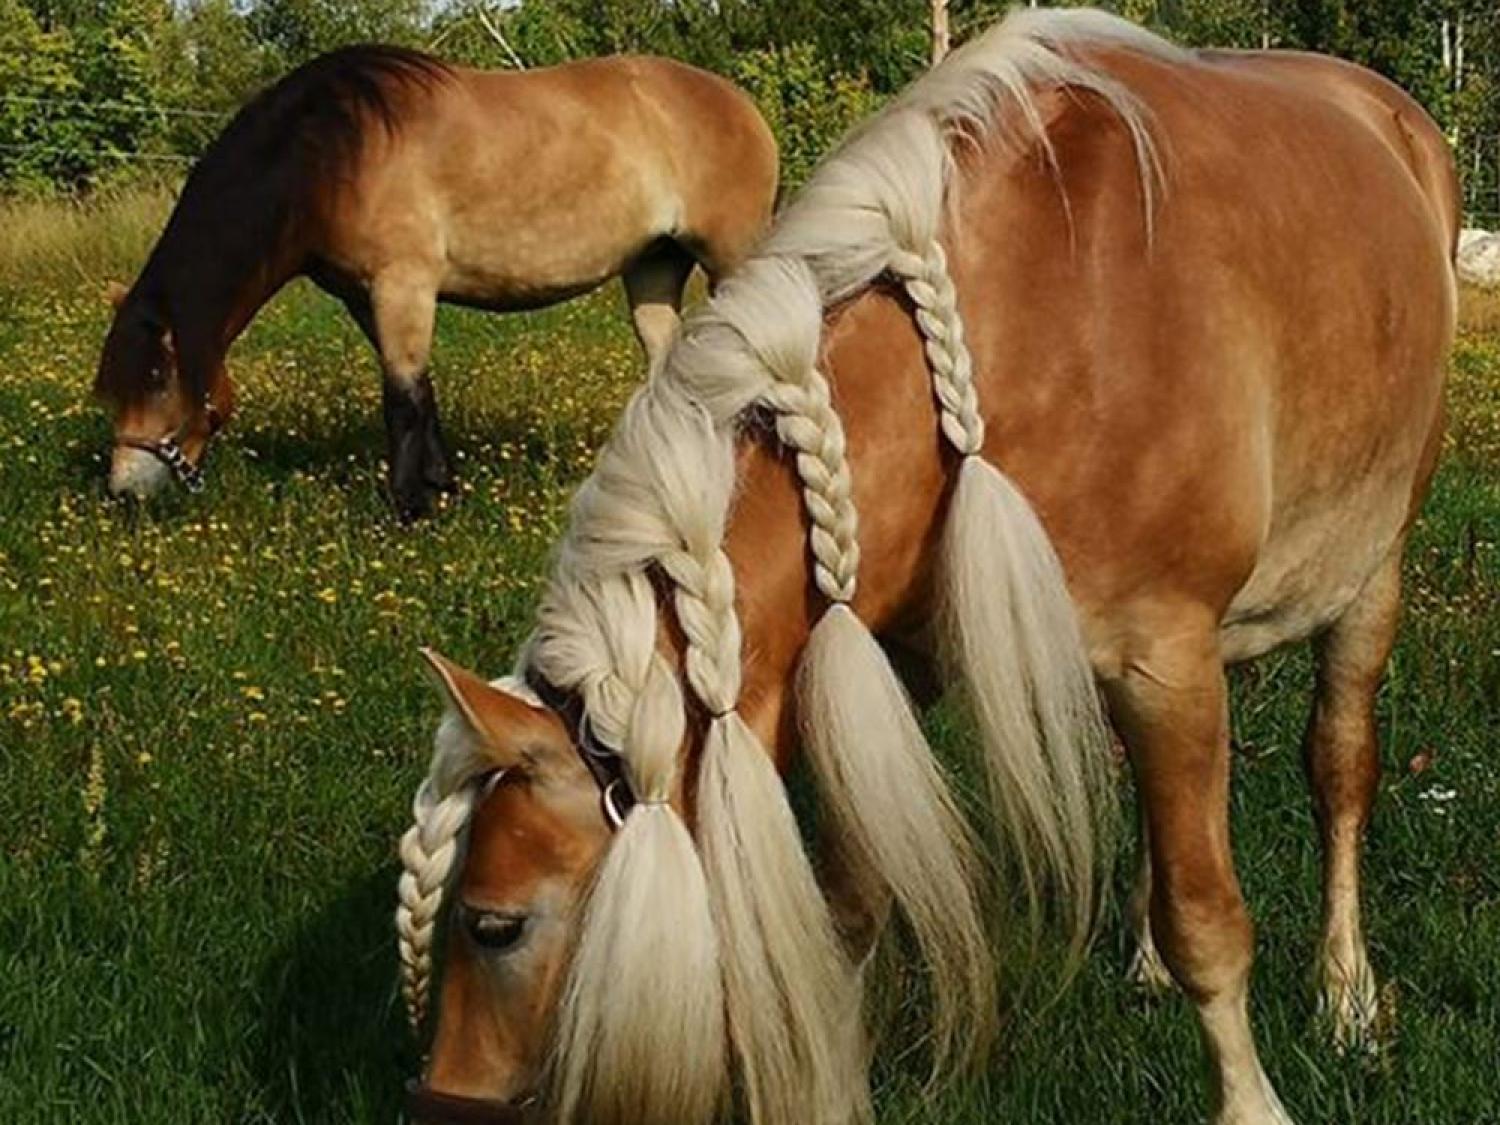 Hammarn - Horses, health & Farm